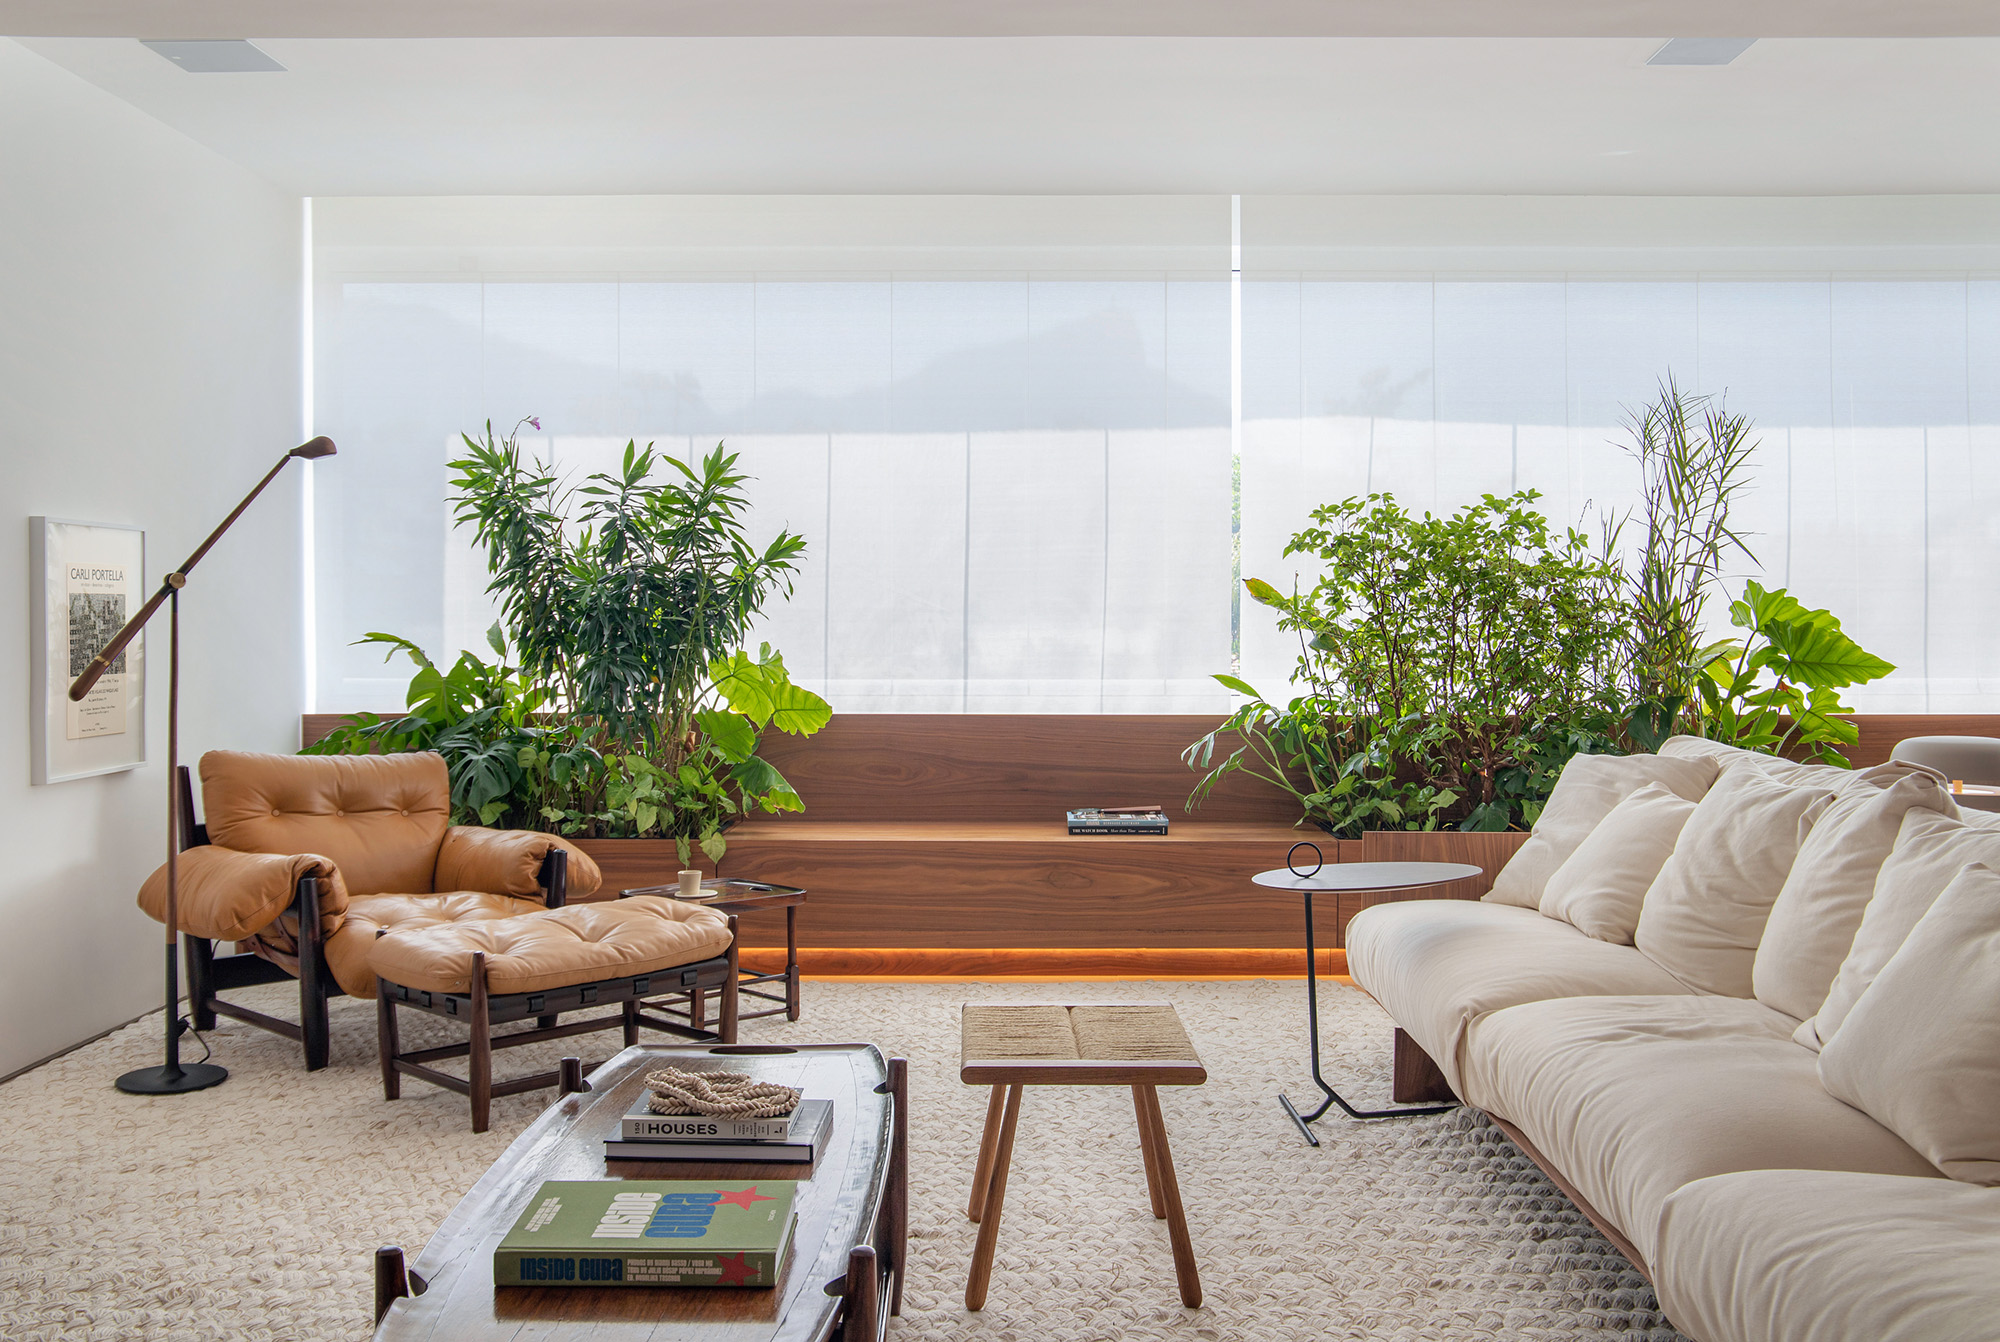 Sala de estar; Poltrona; poltrona Mole; poltrona Sergio Rodrigues; plantas; luminária de piso